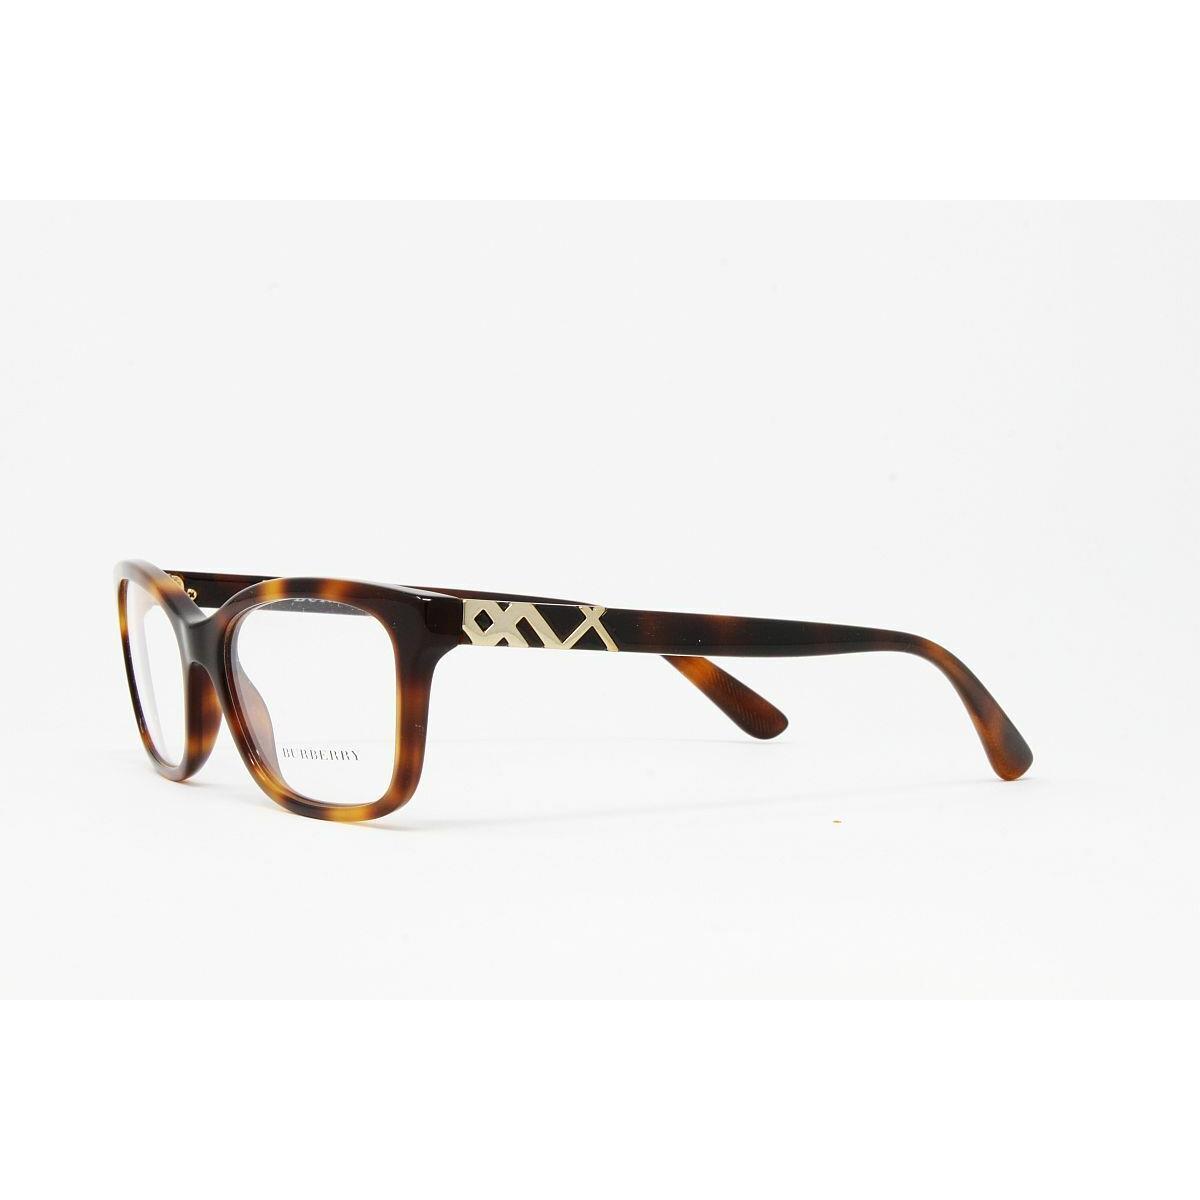 Burberry eyeglasses  - Havana Frame 1